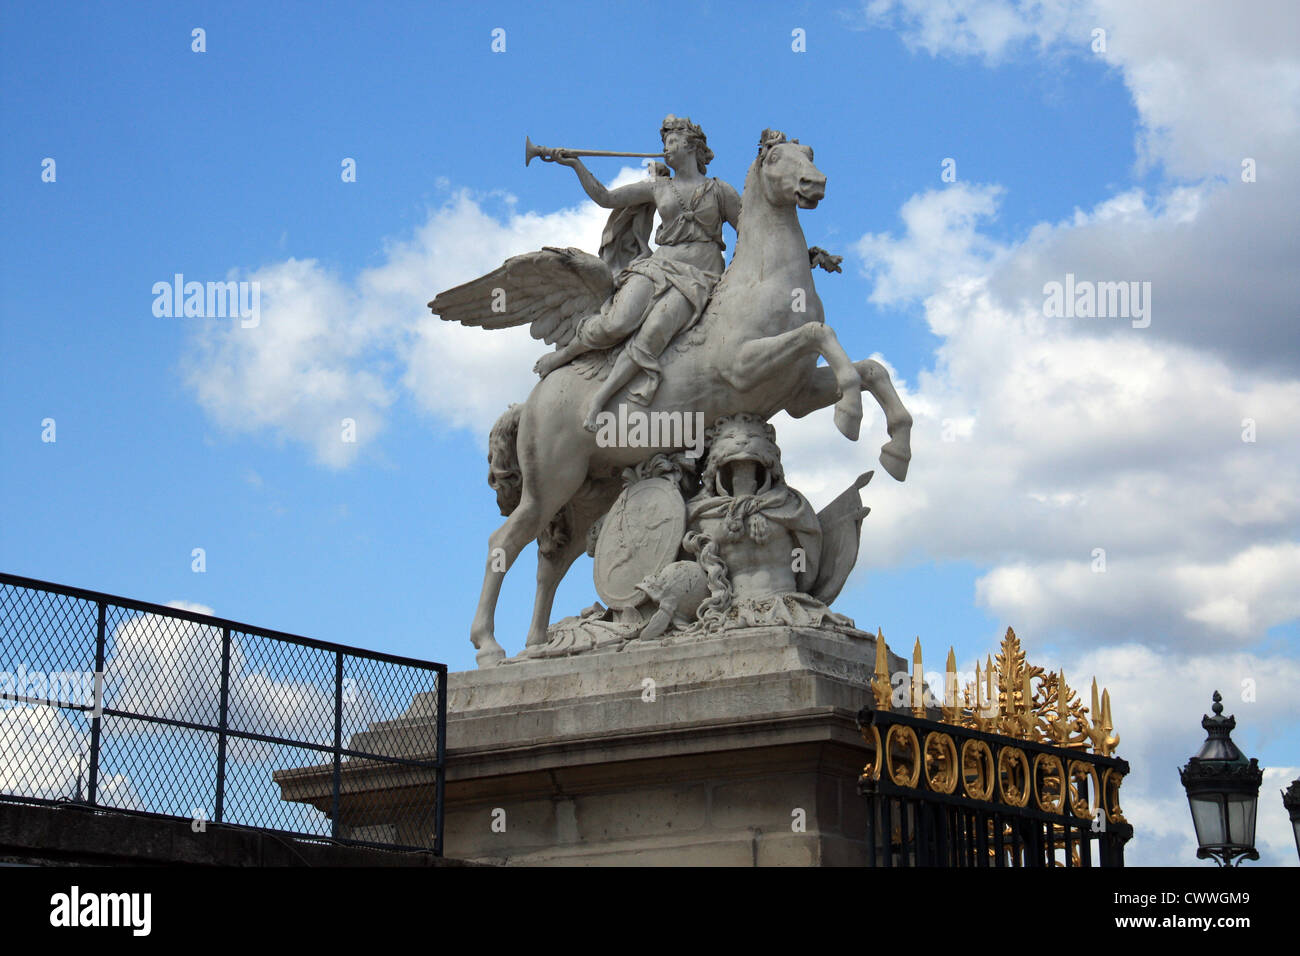 Un être ailé sur un cheval à Paris, France Banque D'Images